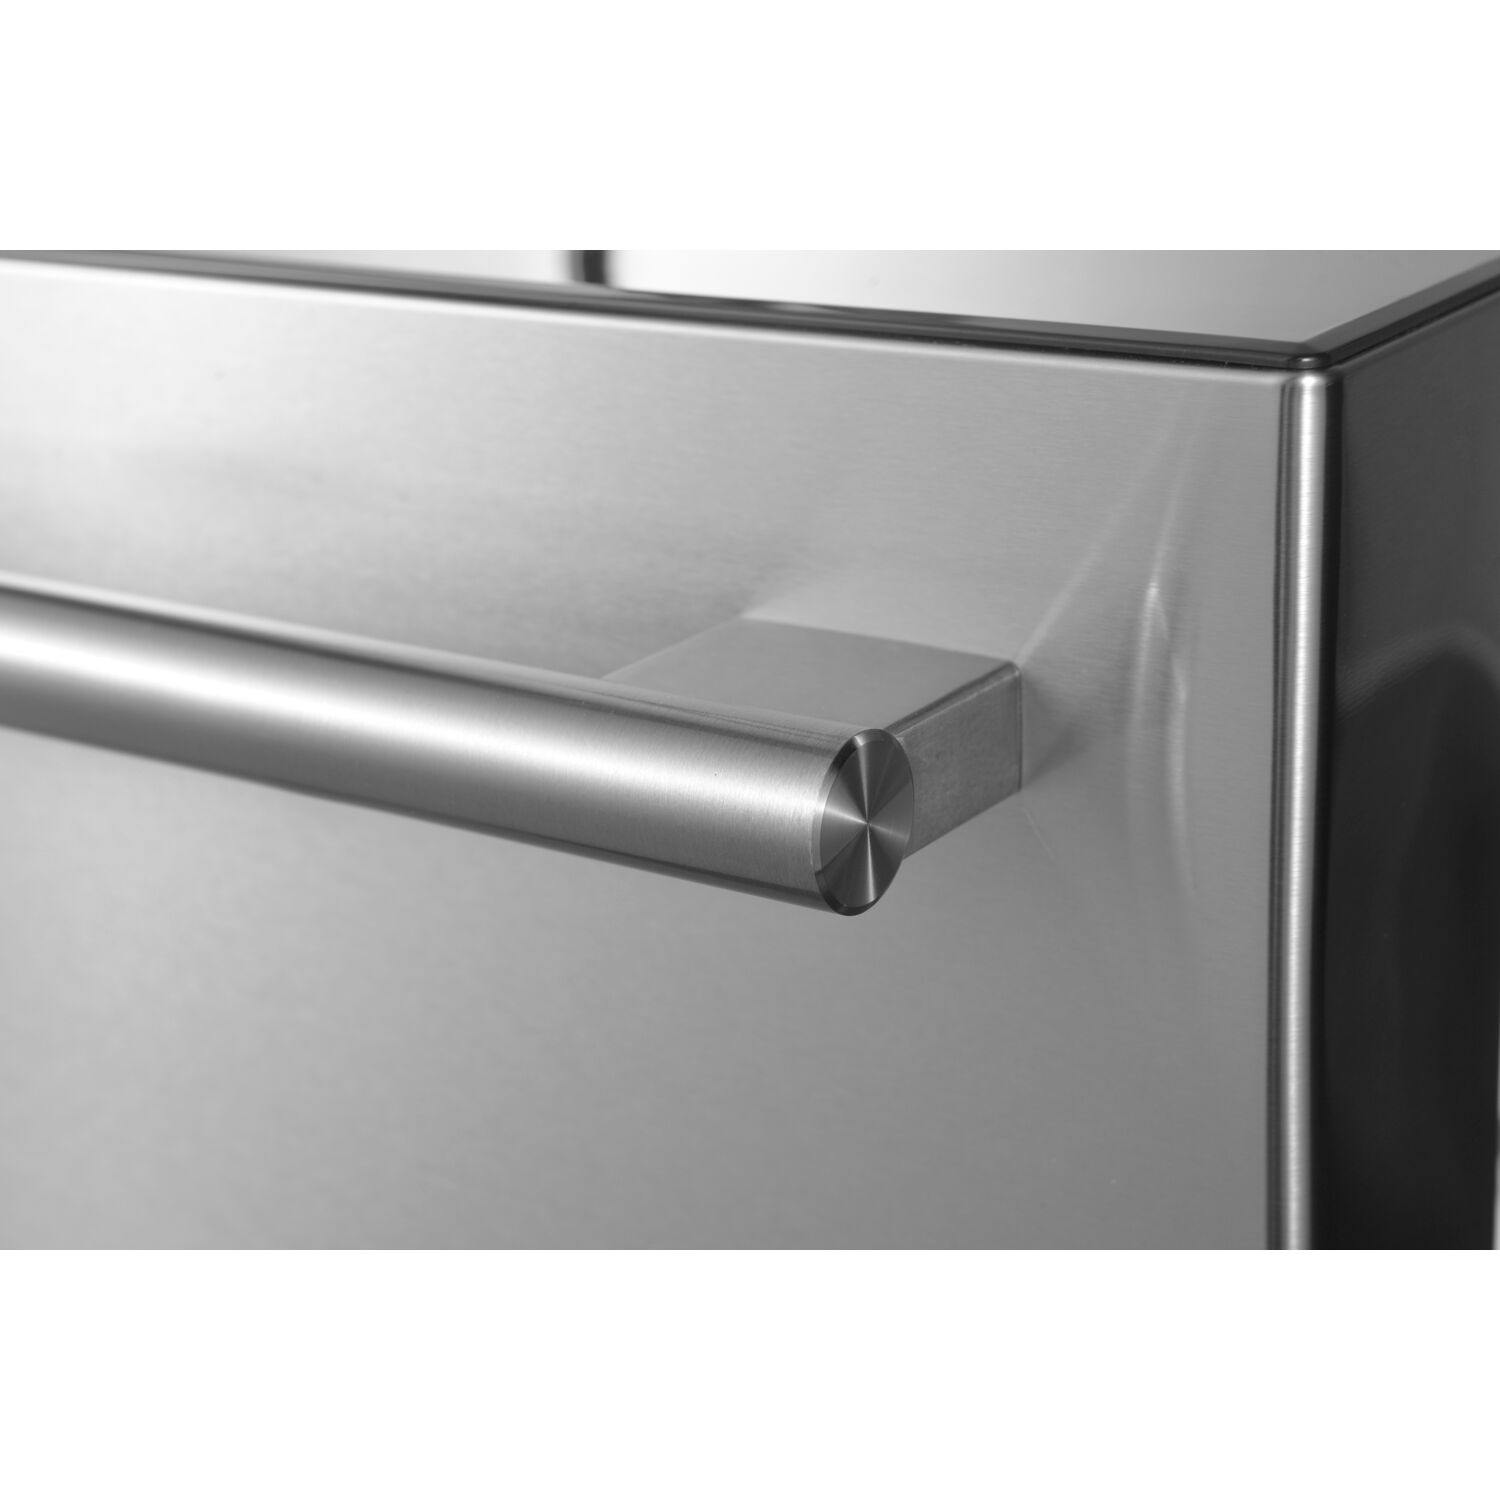 Galanz 16-Cu. Ft. 3-Door French Door Refrigerator, Stainless Steel - image 4 of 12